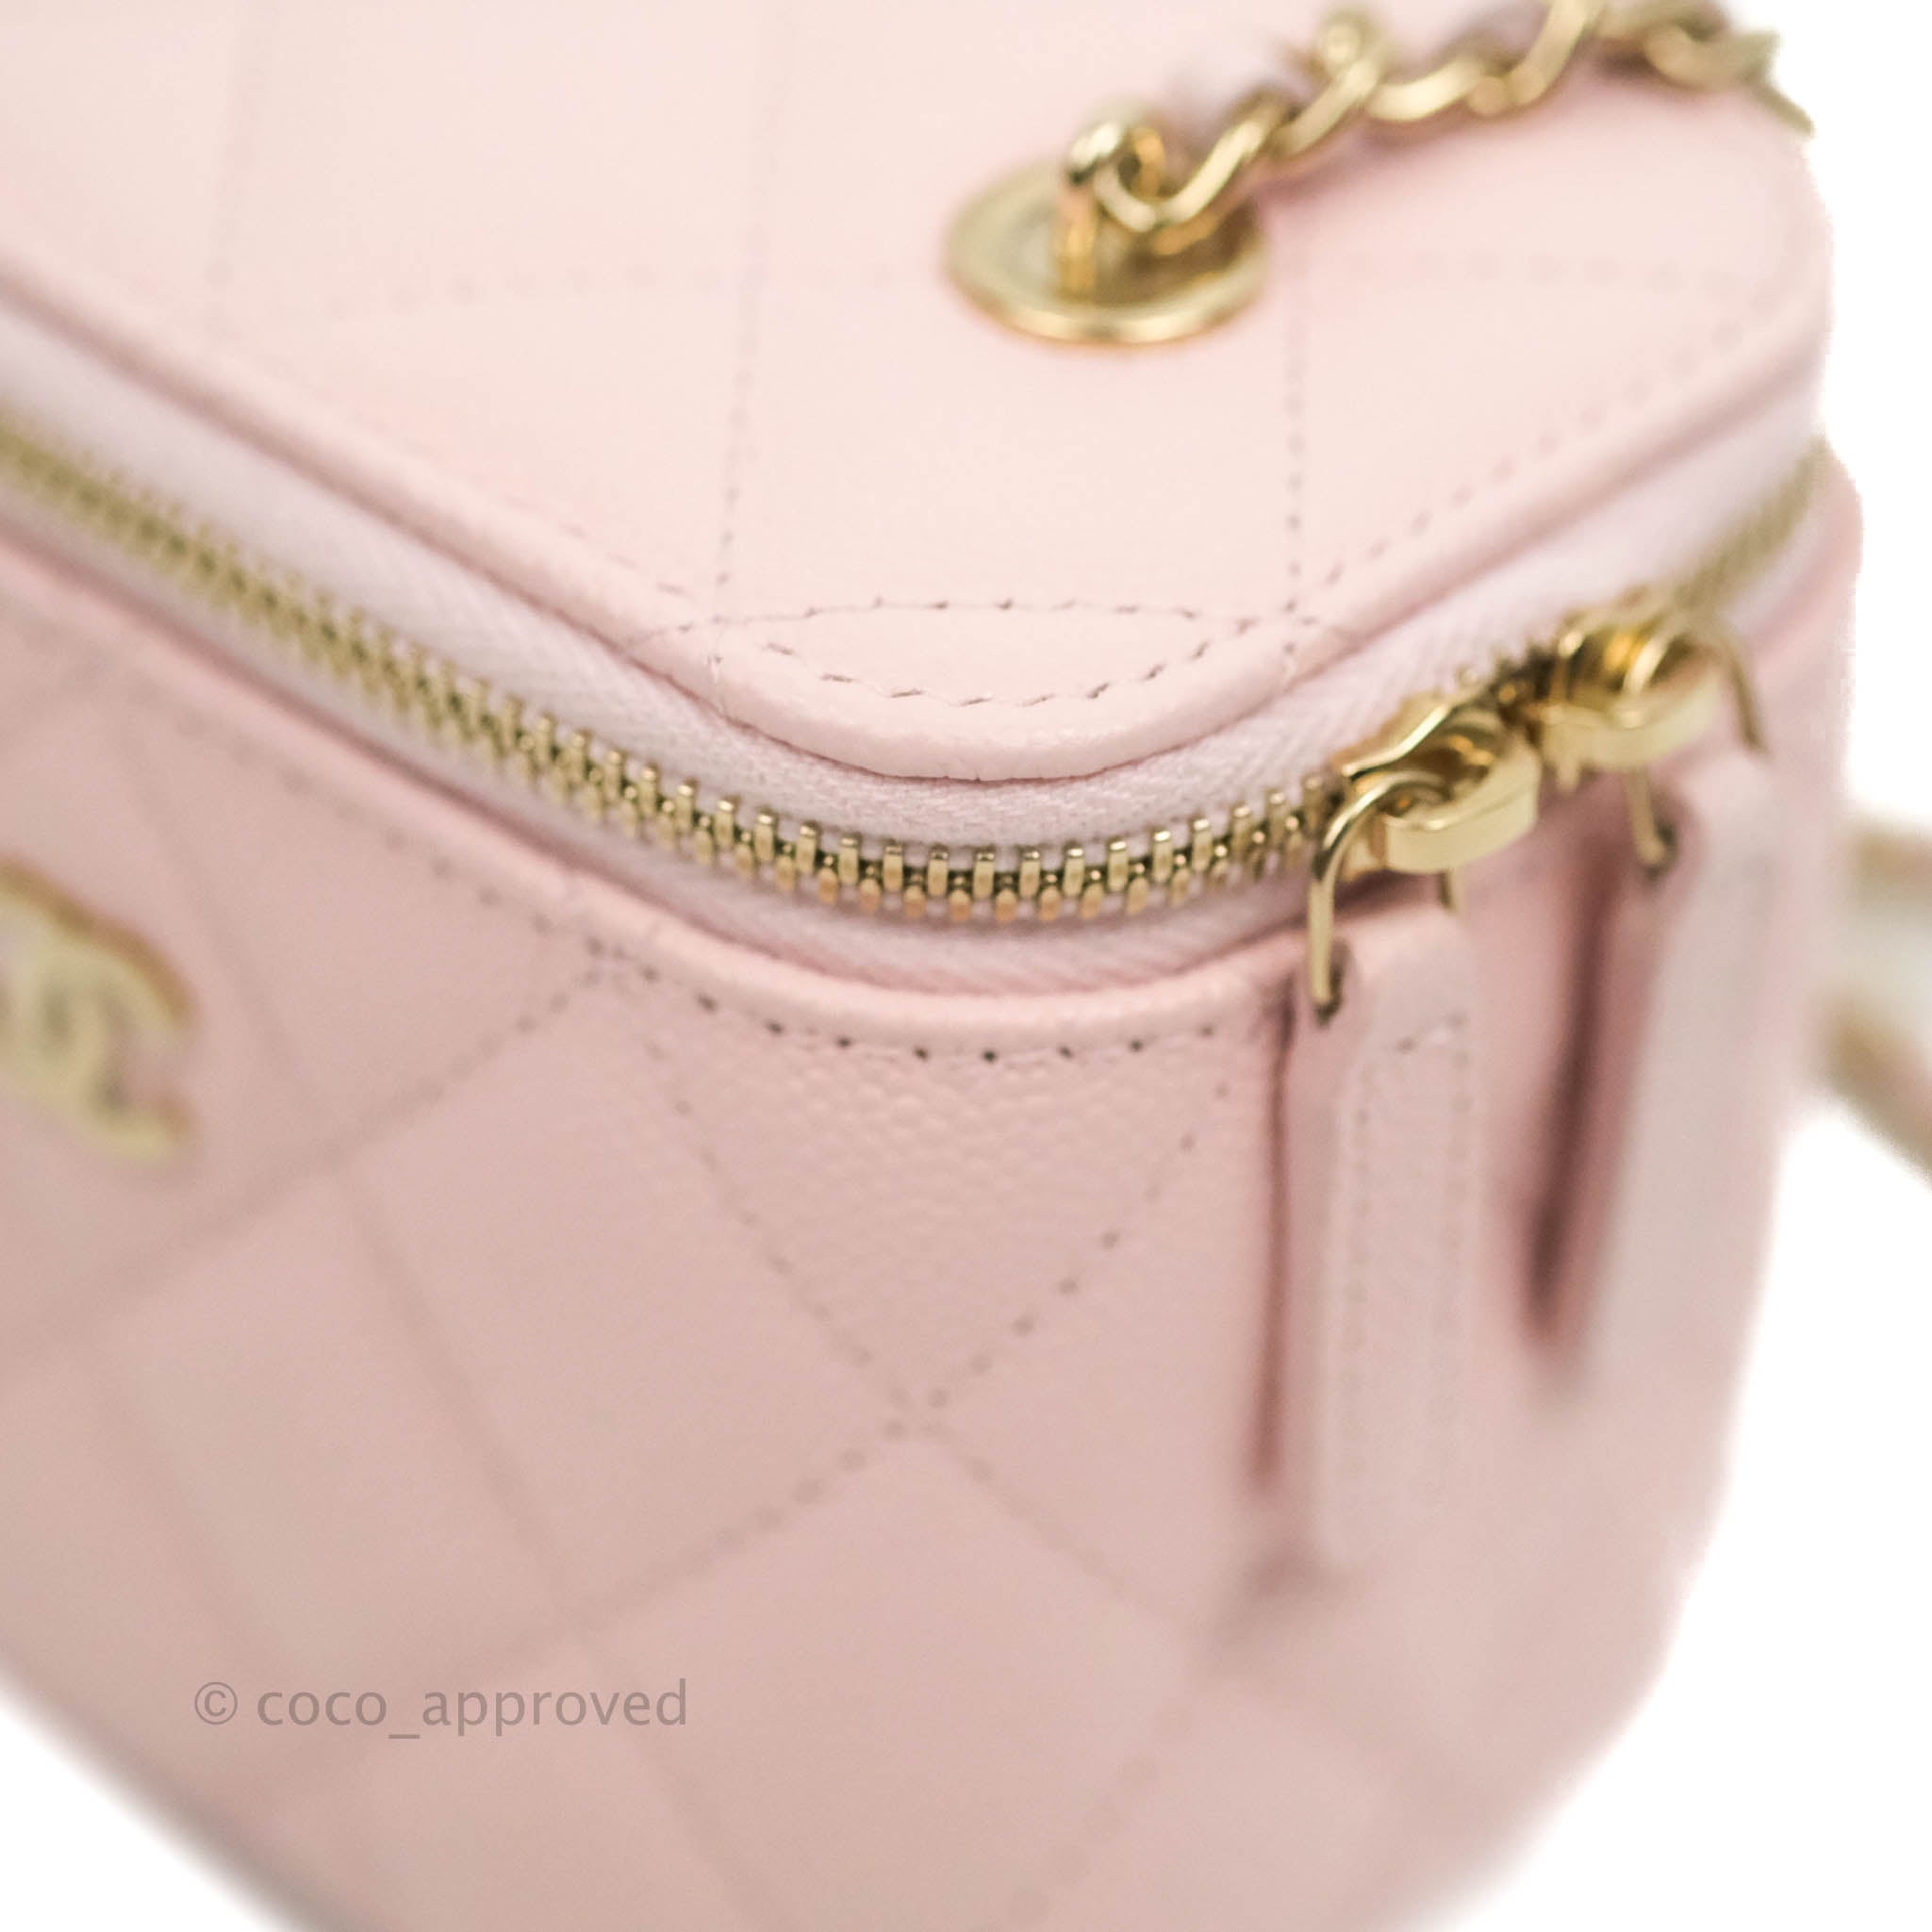 coco chanel designer handbags